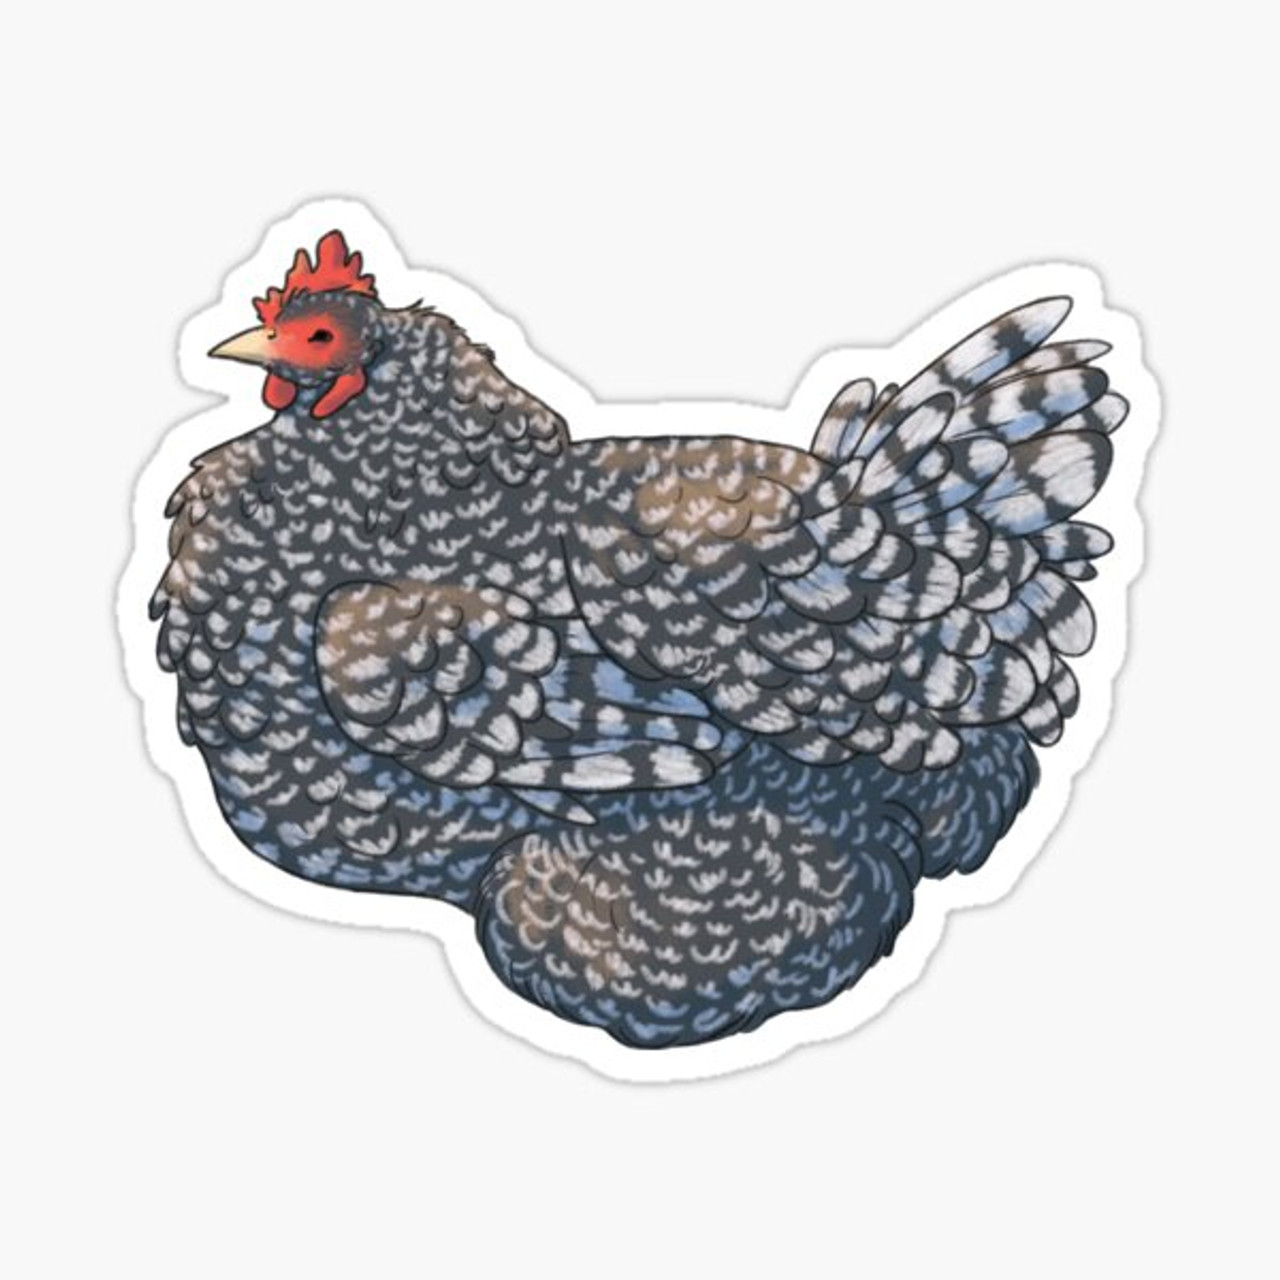 Barred Rock Chicken sticker